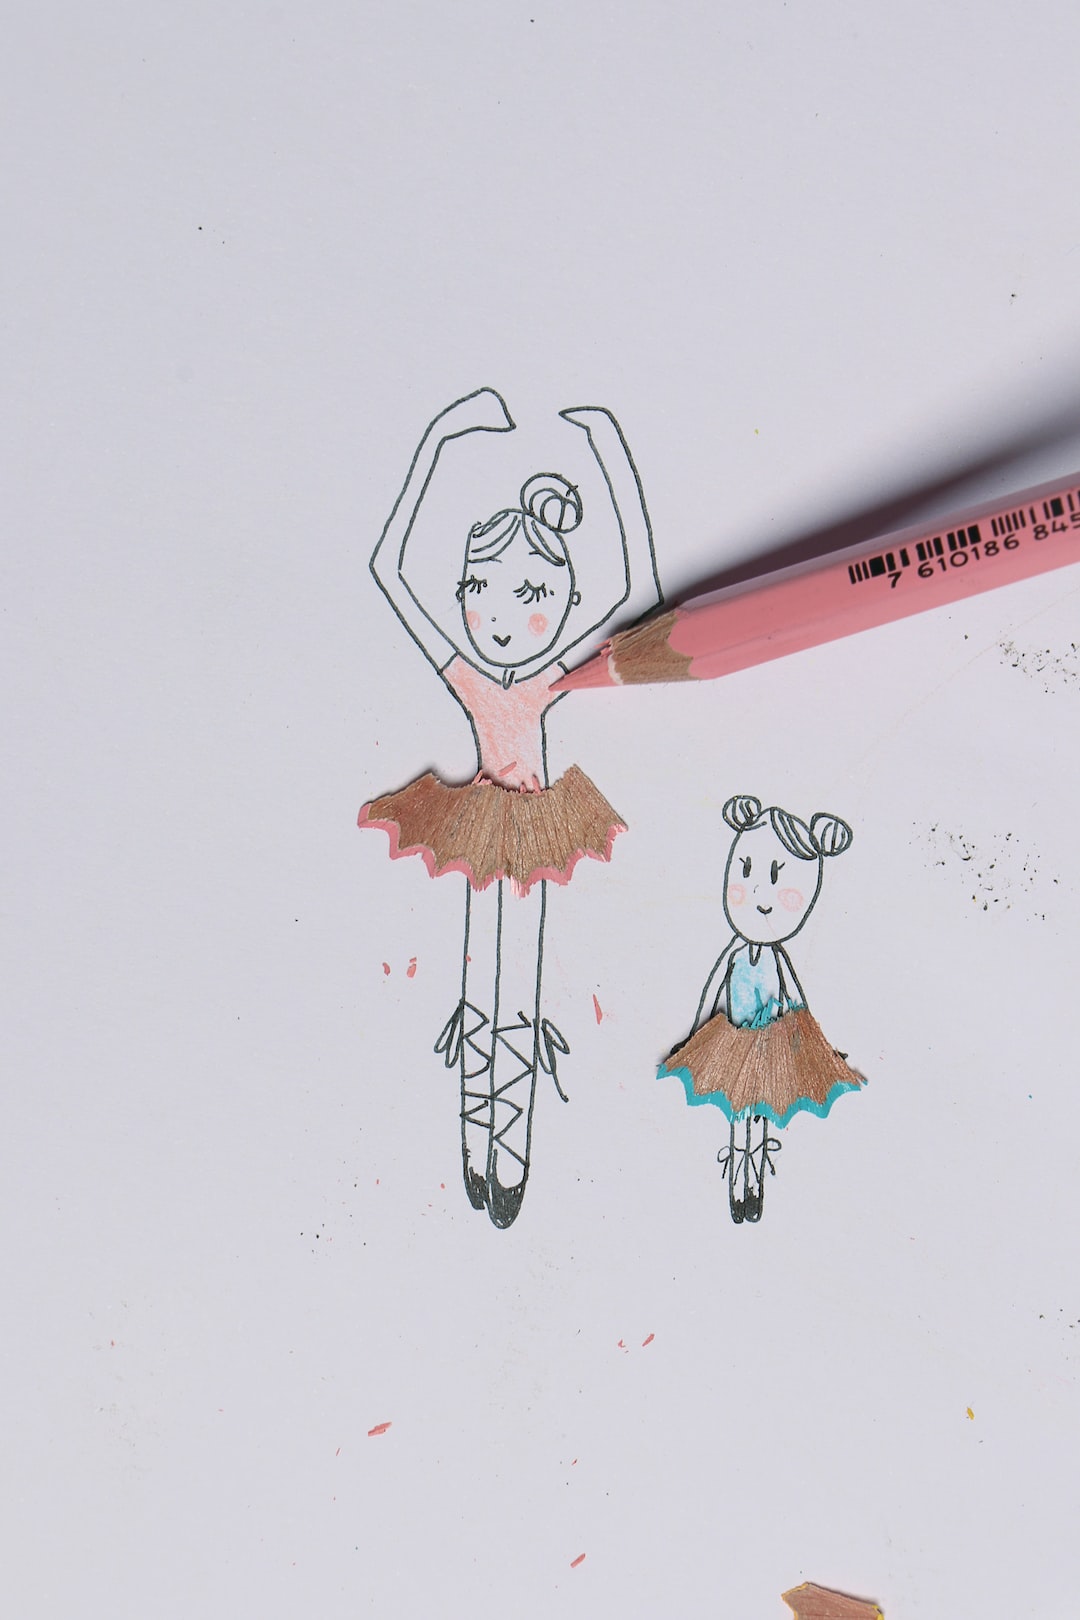 creative doodle art of dancing ballerinas on paper.